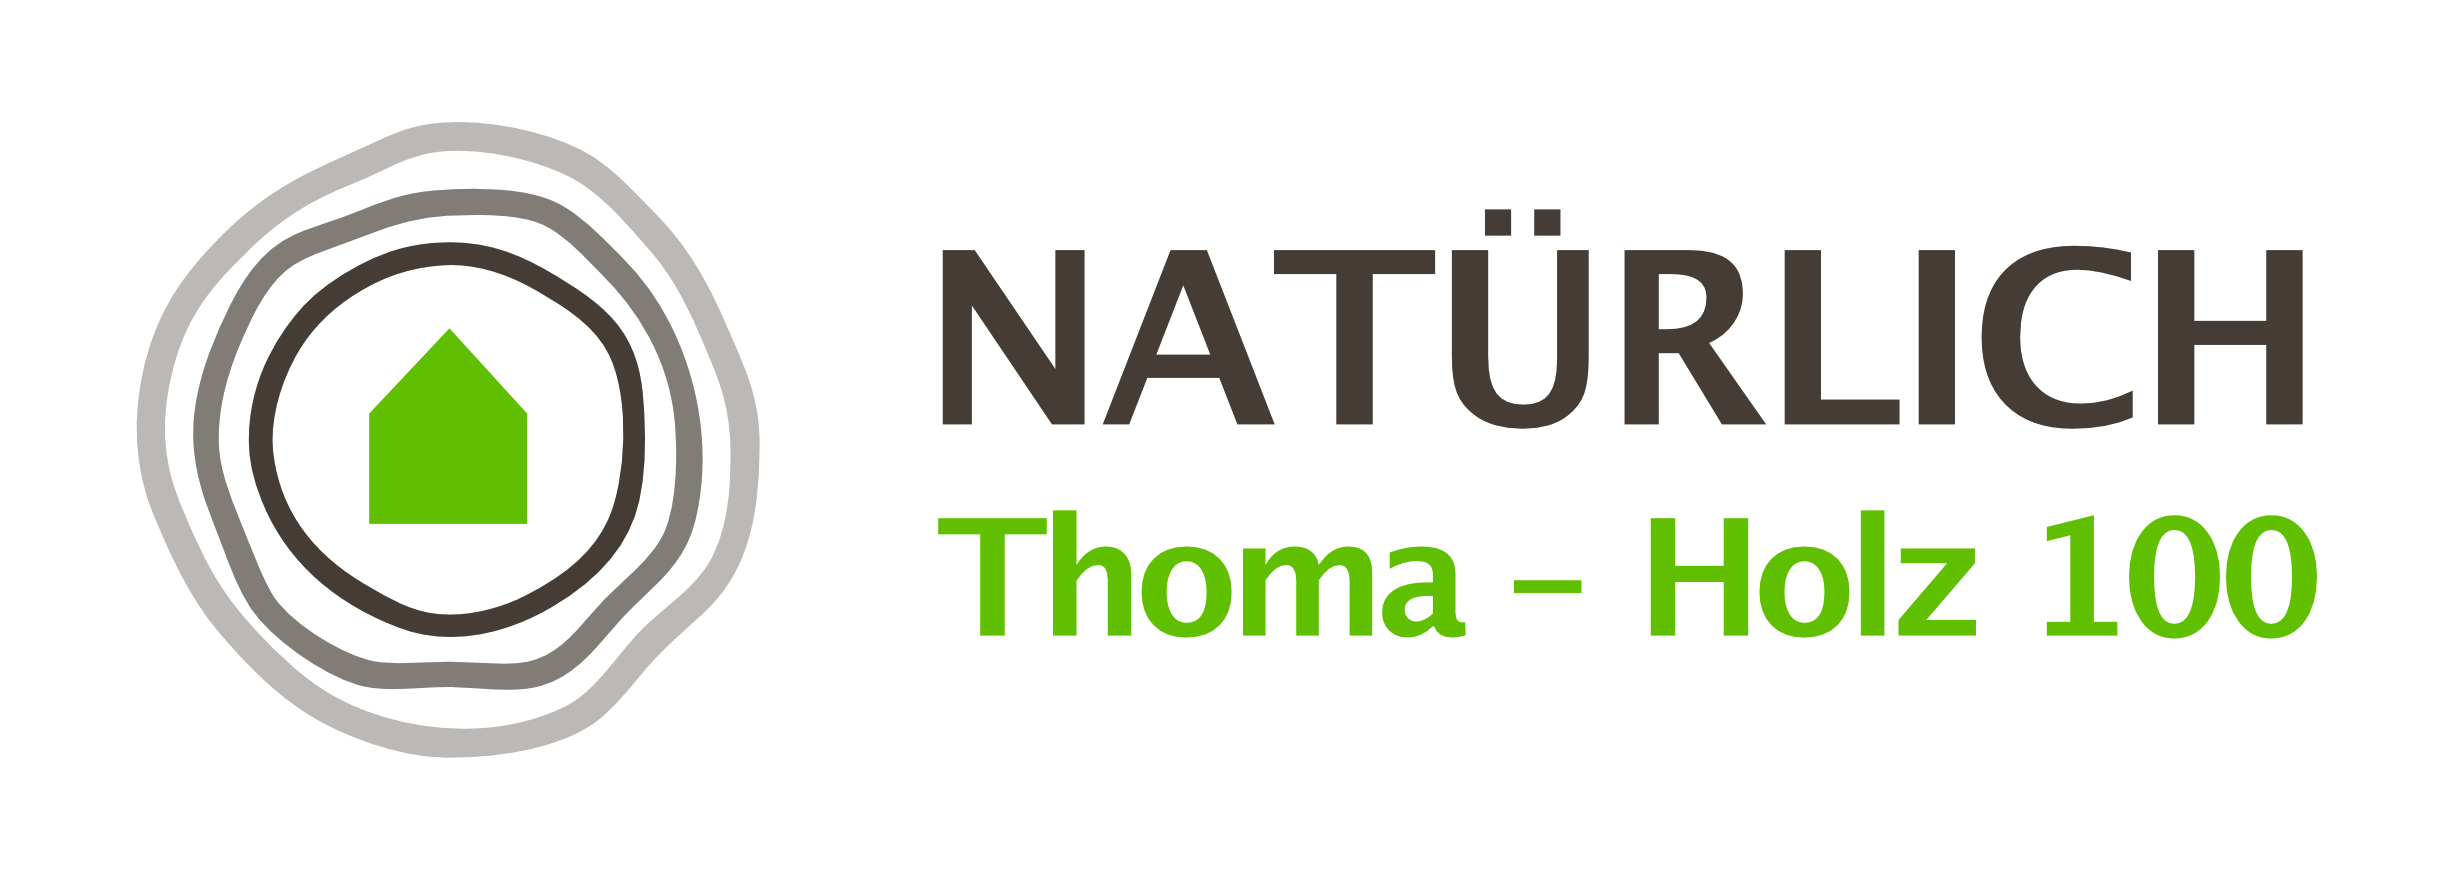 Logo-Natuerlich-Thoma-Holz-100 Kopie 3